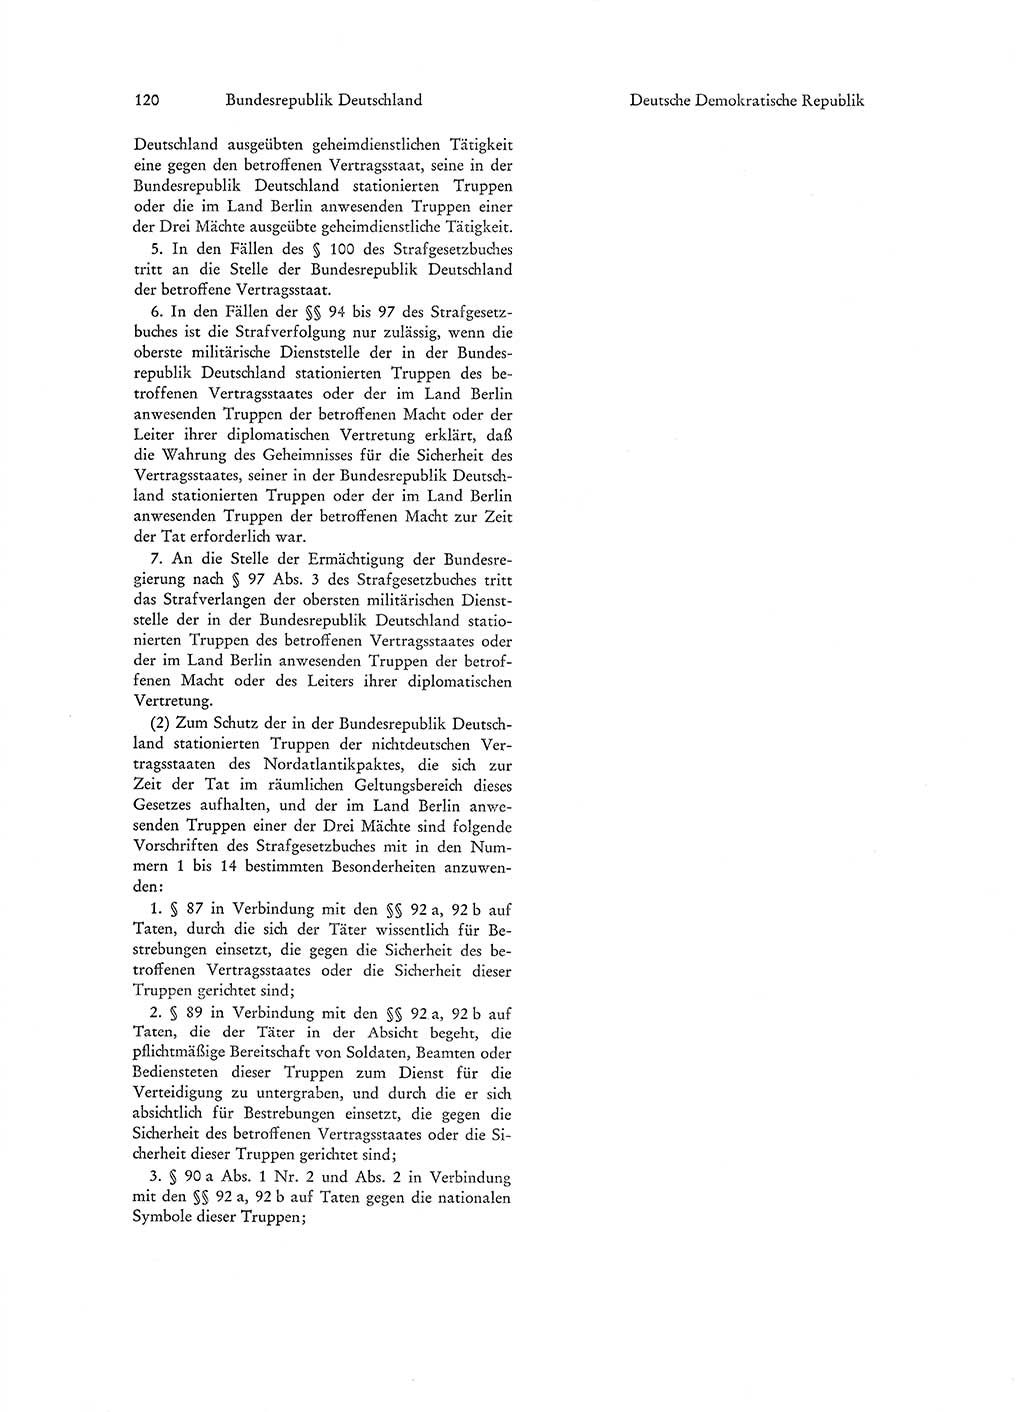 Strafgesetzgebung in Deutschland [Bundesrepublik Deutschland (BRD) und Deutsche Demokratische Republik (DDR)] 1972, Seite 120 (Str.-Ges. Dtl. StGB BRD DDR 1972, S. 120)